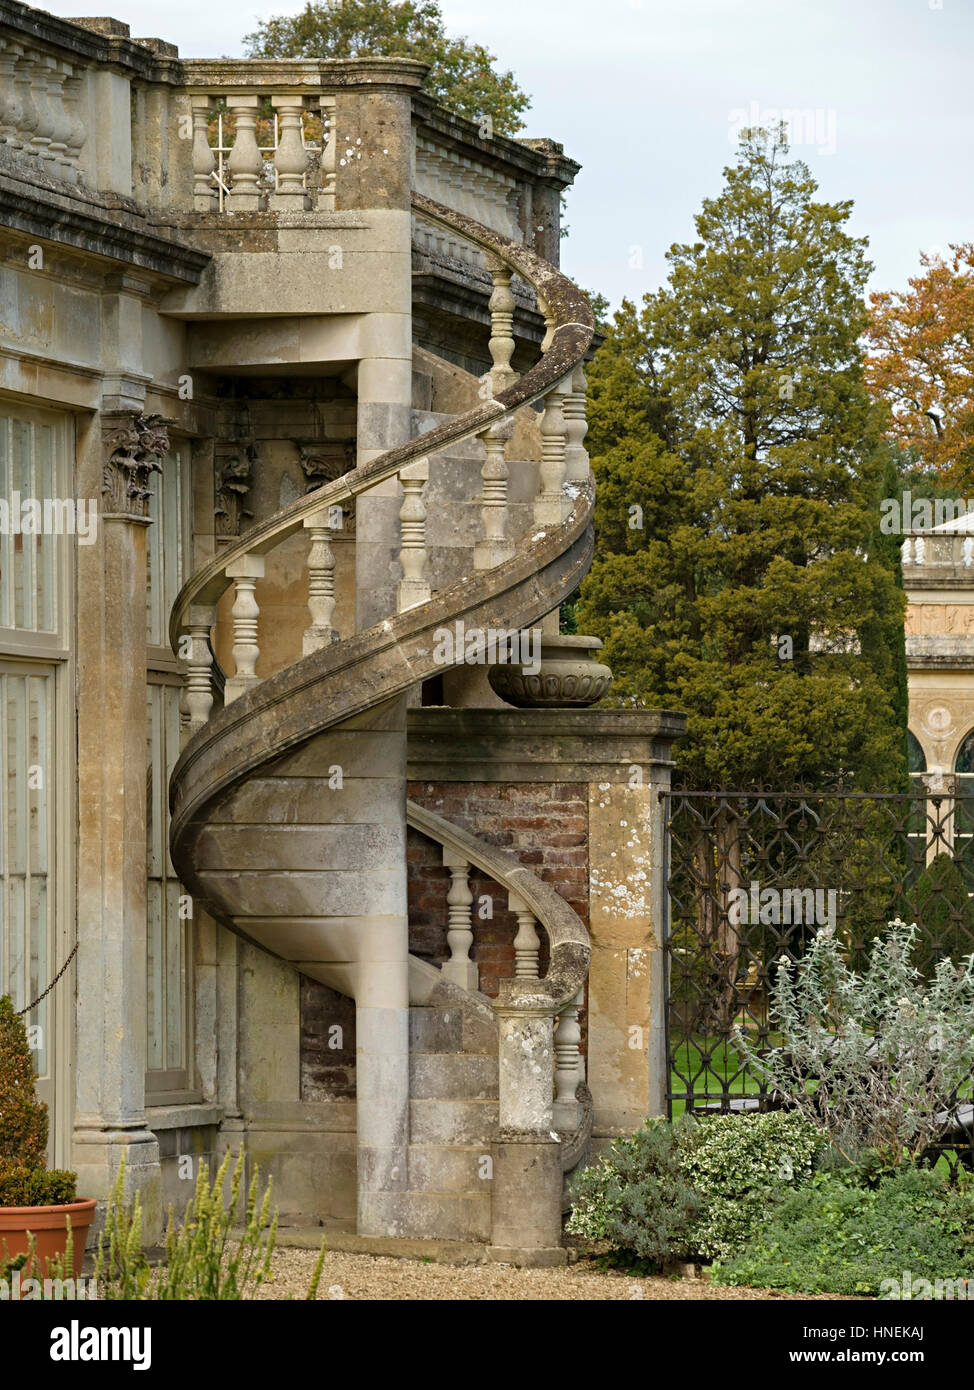 Außen, steinerne Wendeltreppe, Torbogen House, Castle Ashby House und Gärten, Schloss Ashby, Northamptonshire, England, UK Stockfoto